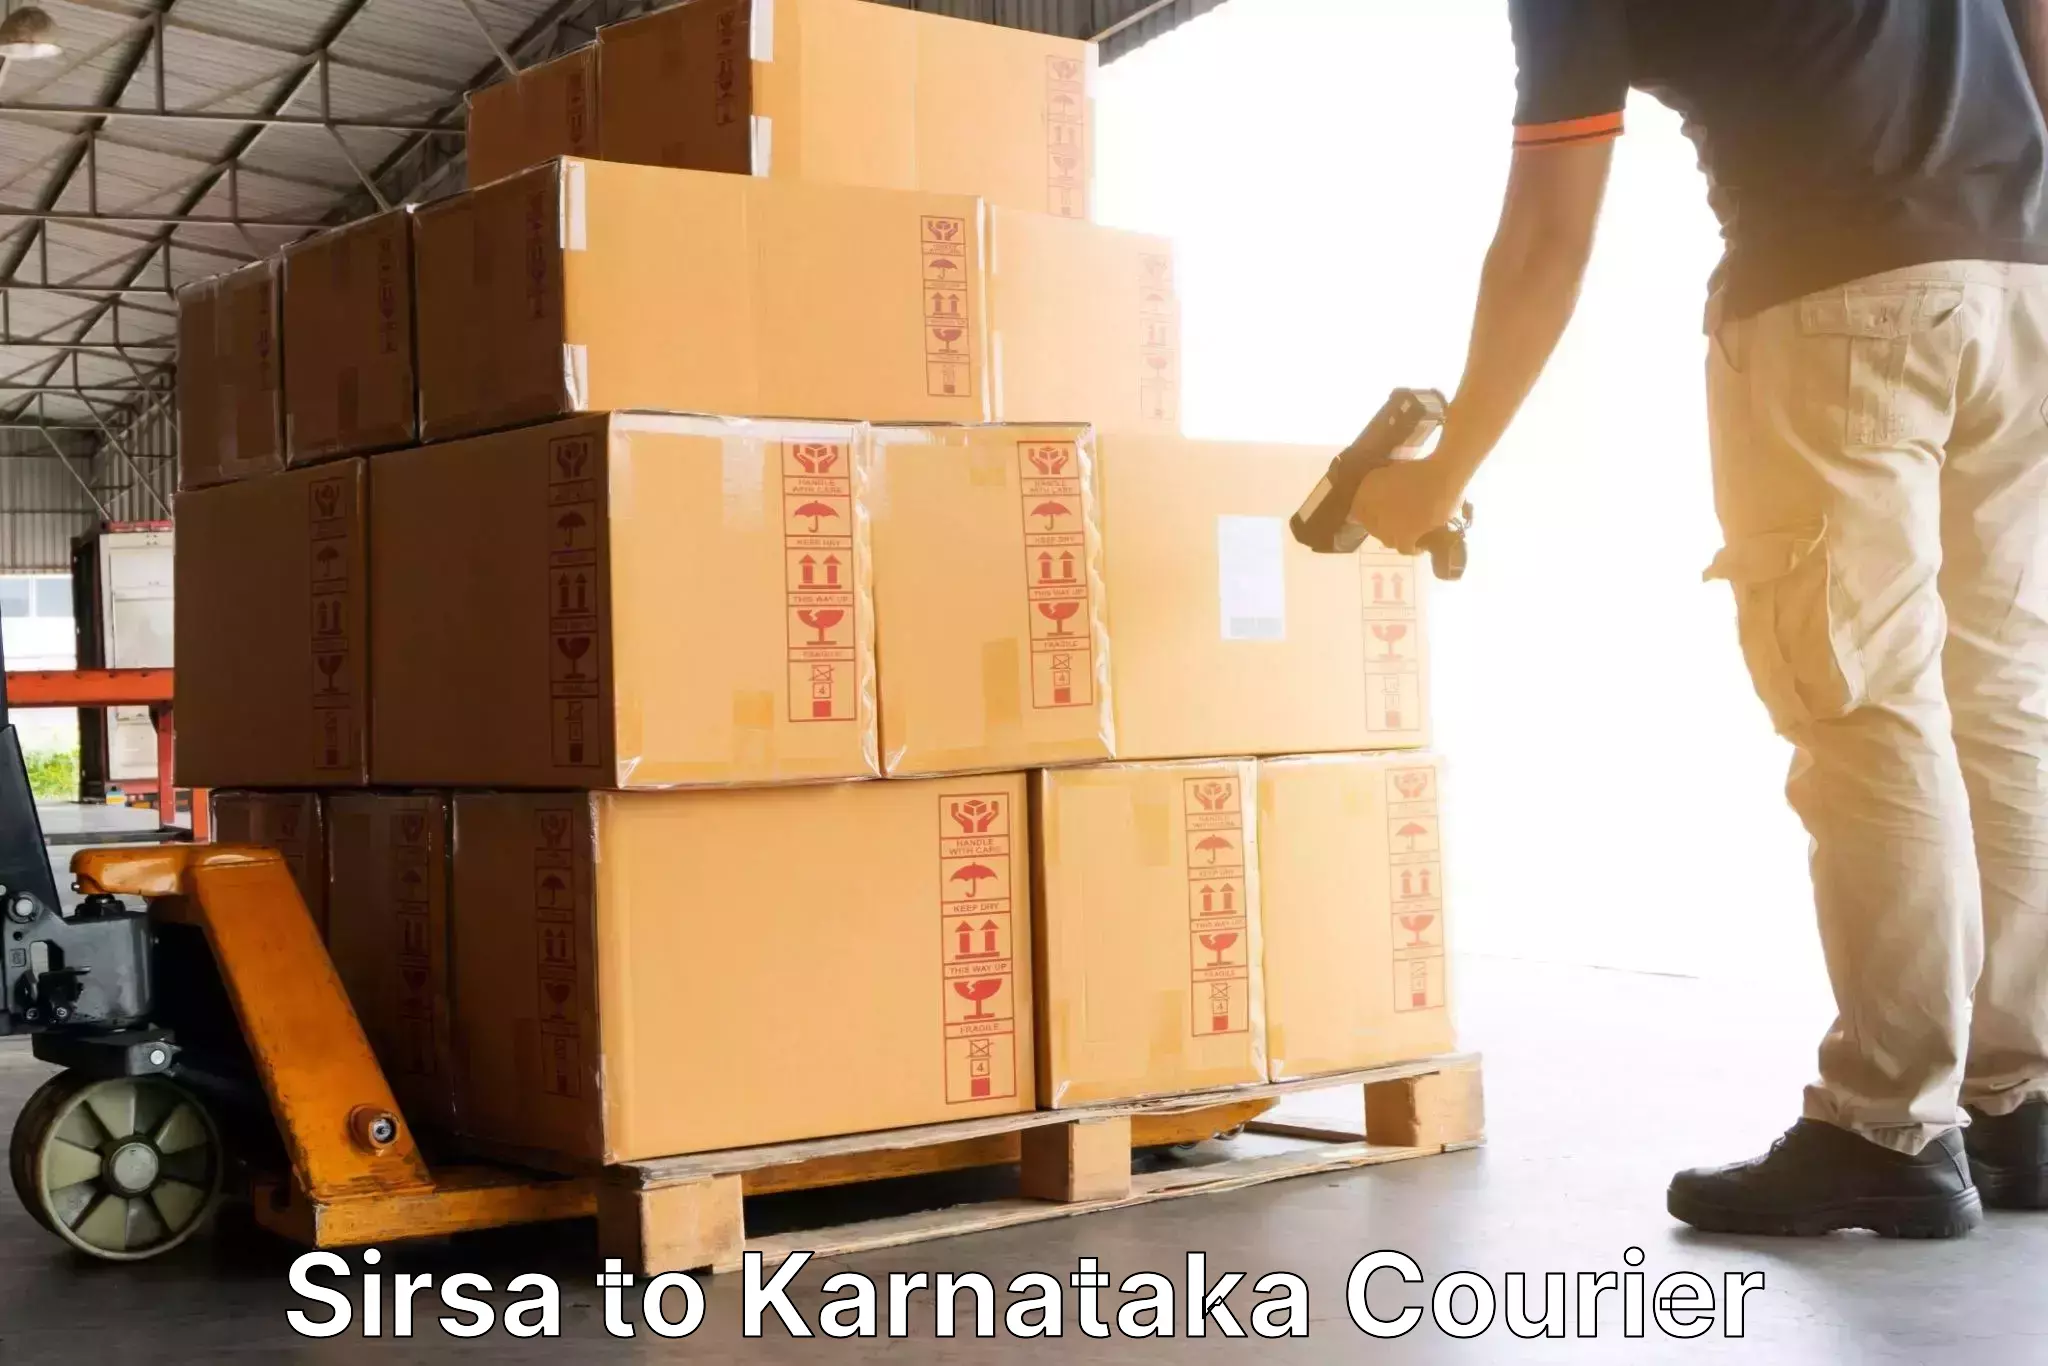 Global shipping solutions Sirsa to Karnataka